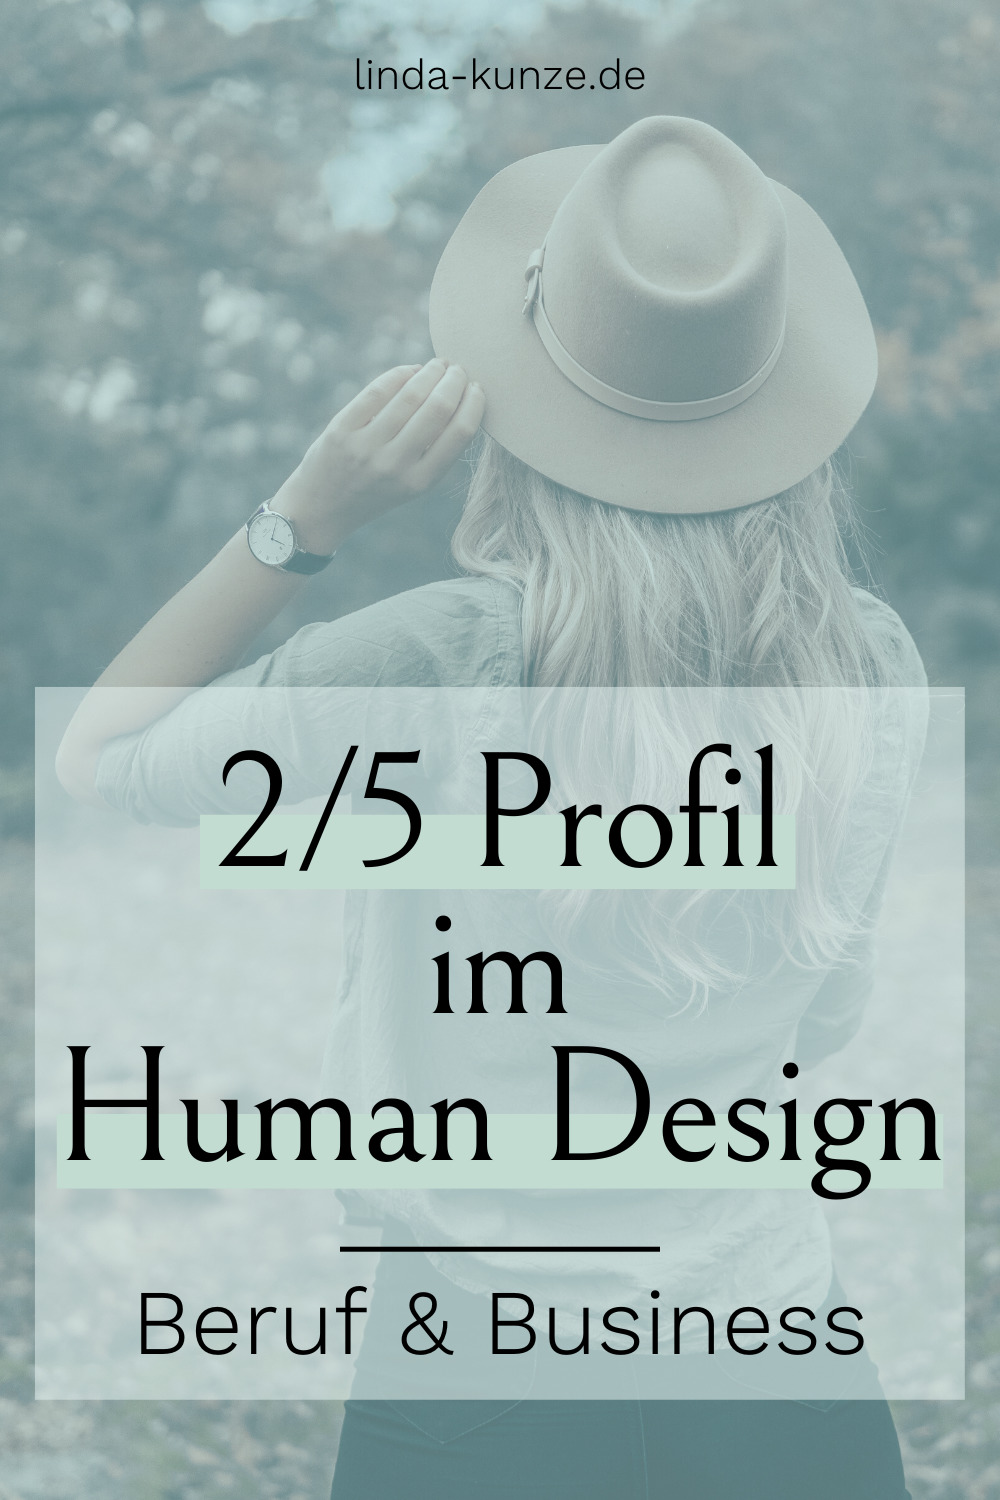 Merkmale und Eigenschaften Profil 2 5 im Human Design